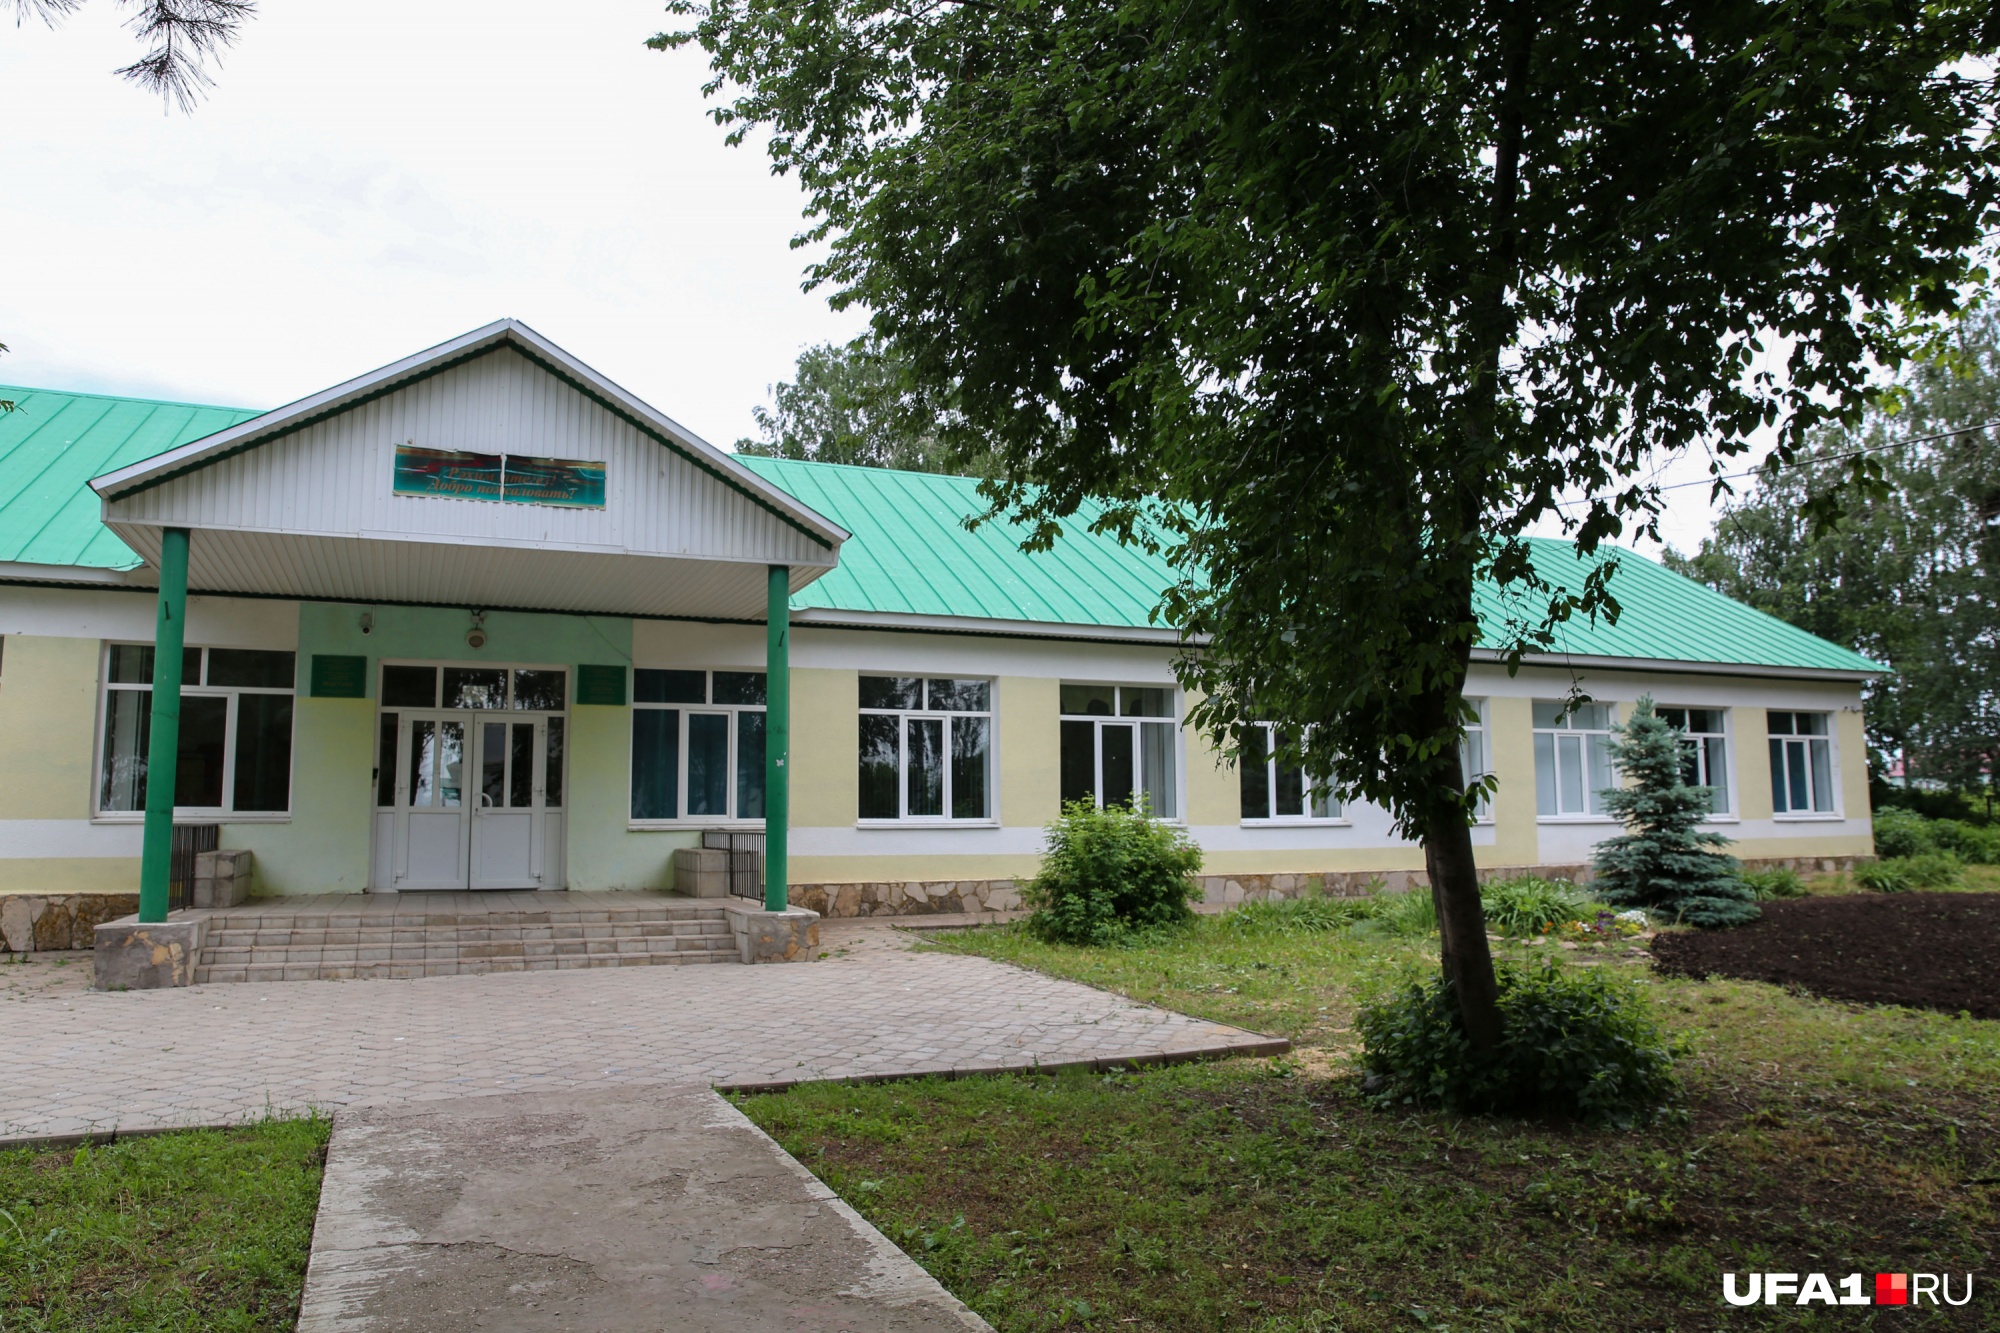 Сейчас школа, где учился Шатунов, выглядит так